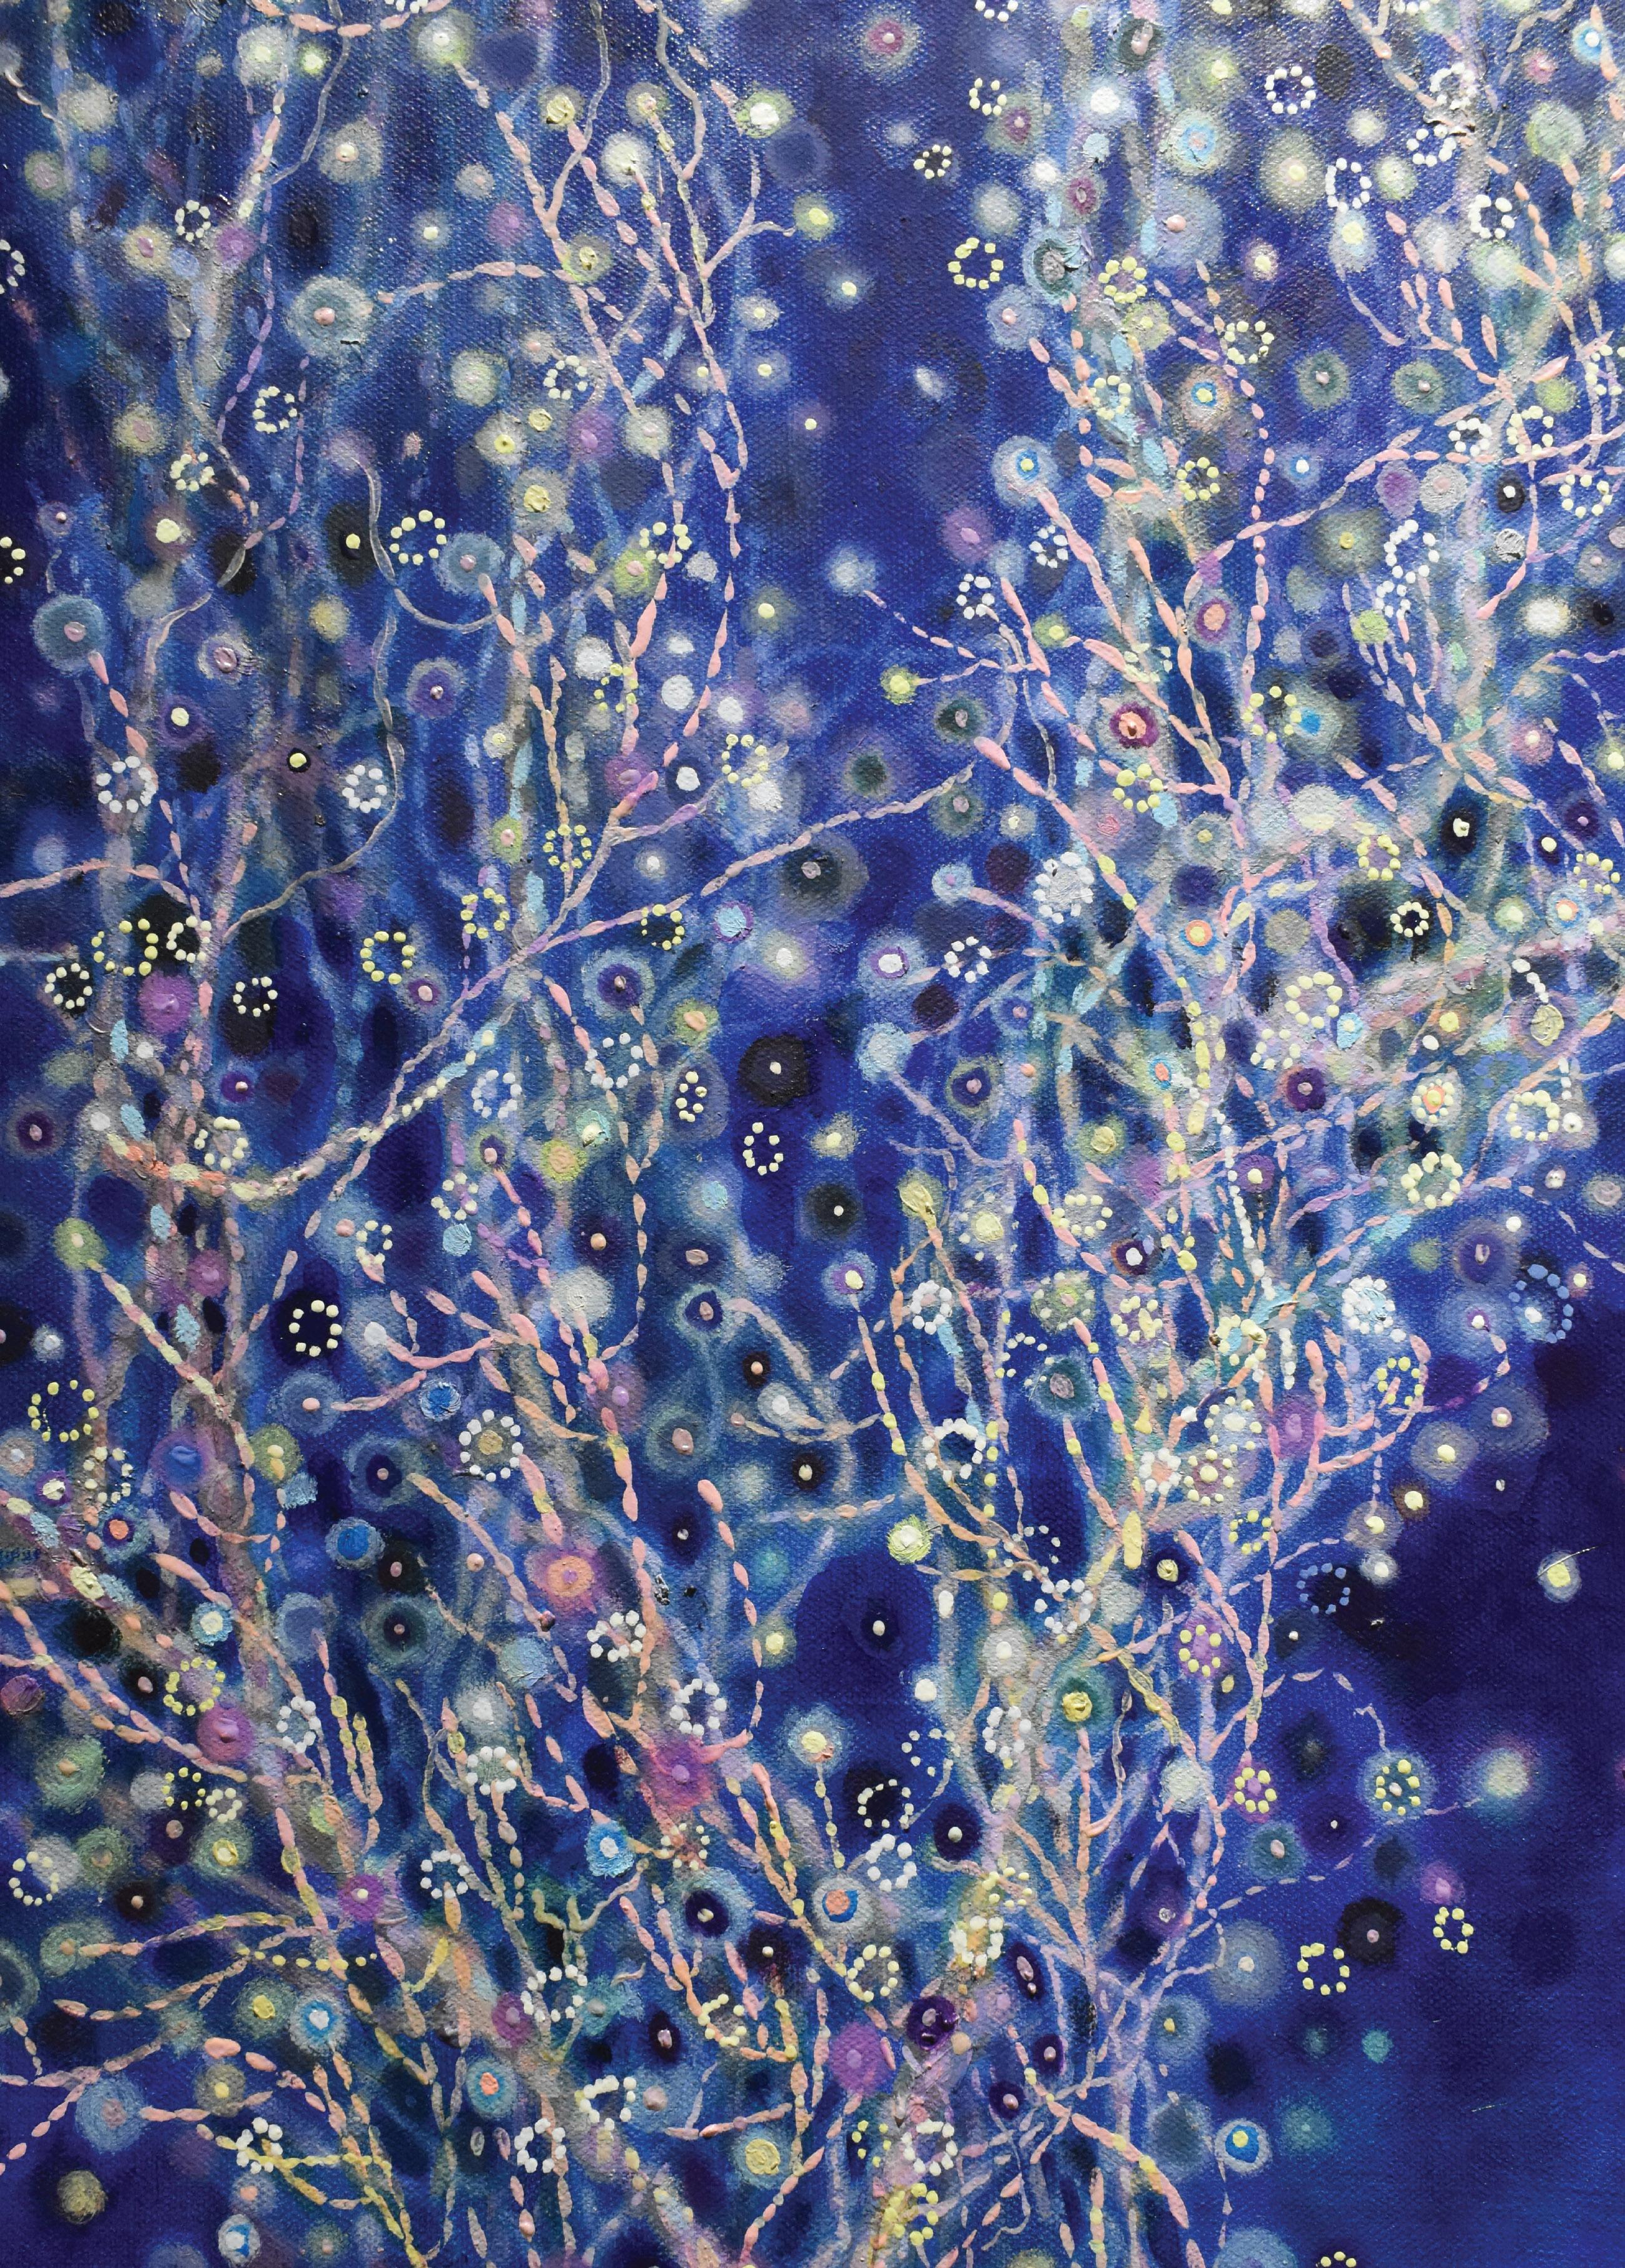 Mysteriöse und romantische Naturszenen in Blau, Silber in abstrakter Expression – Painting von Guo Shu Ling